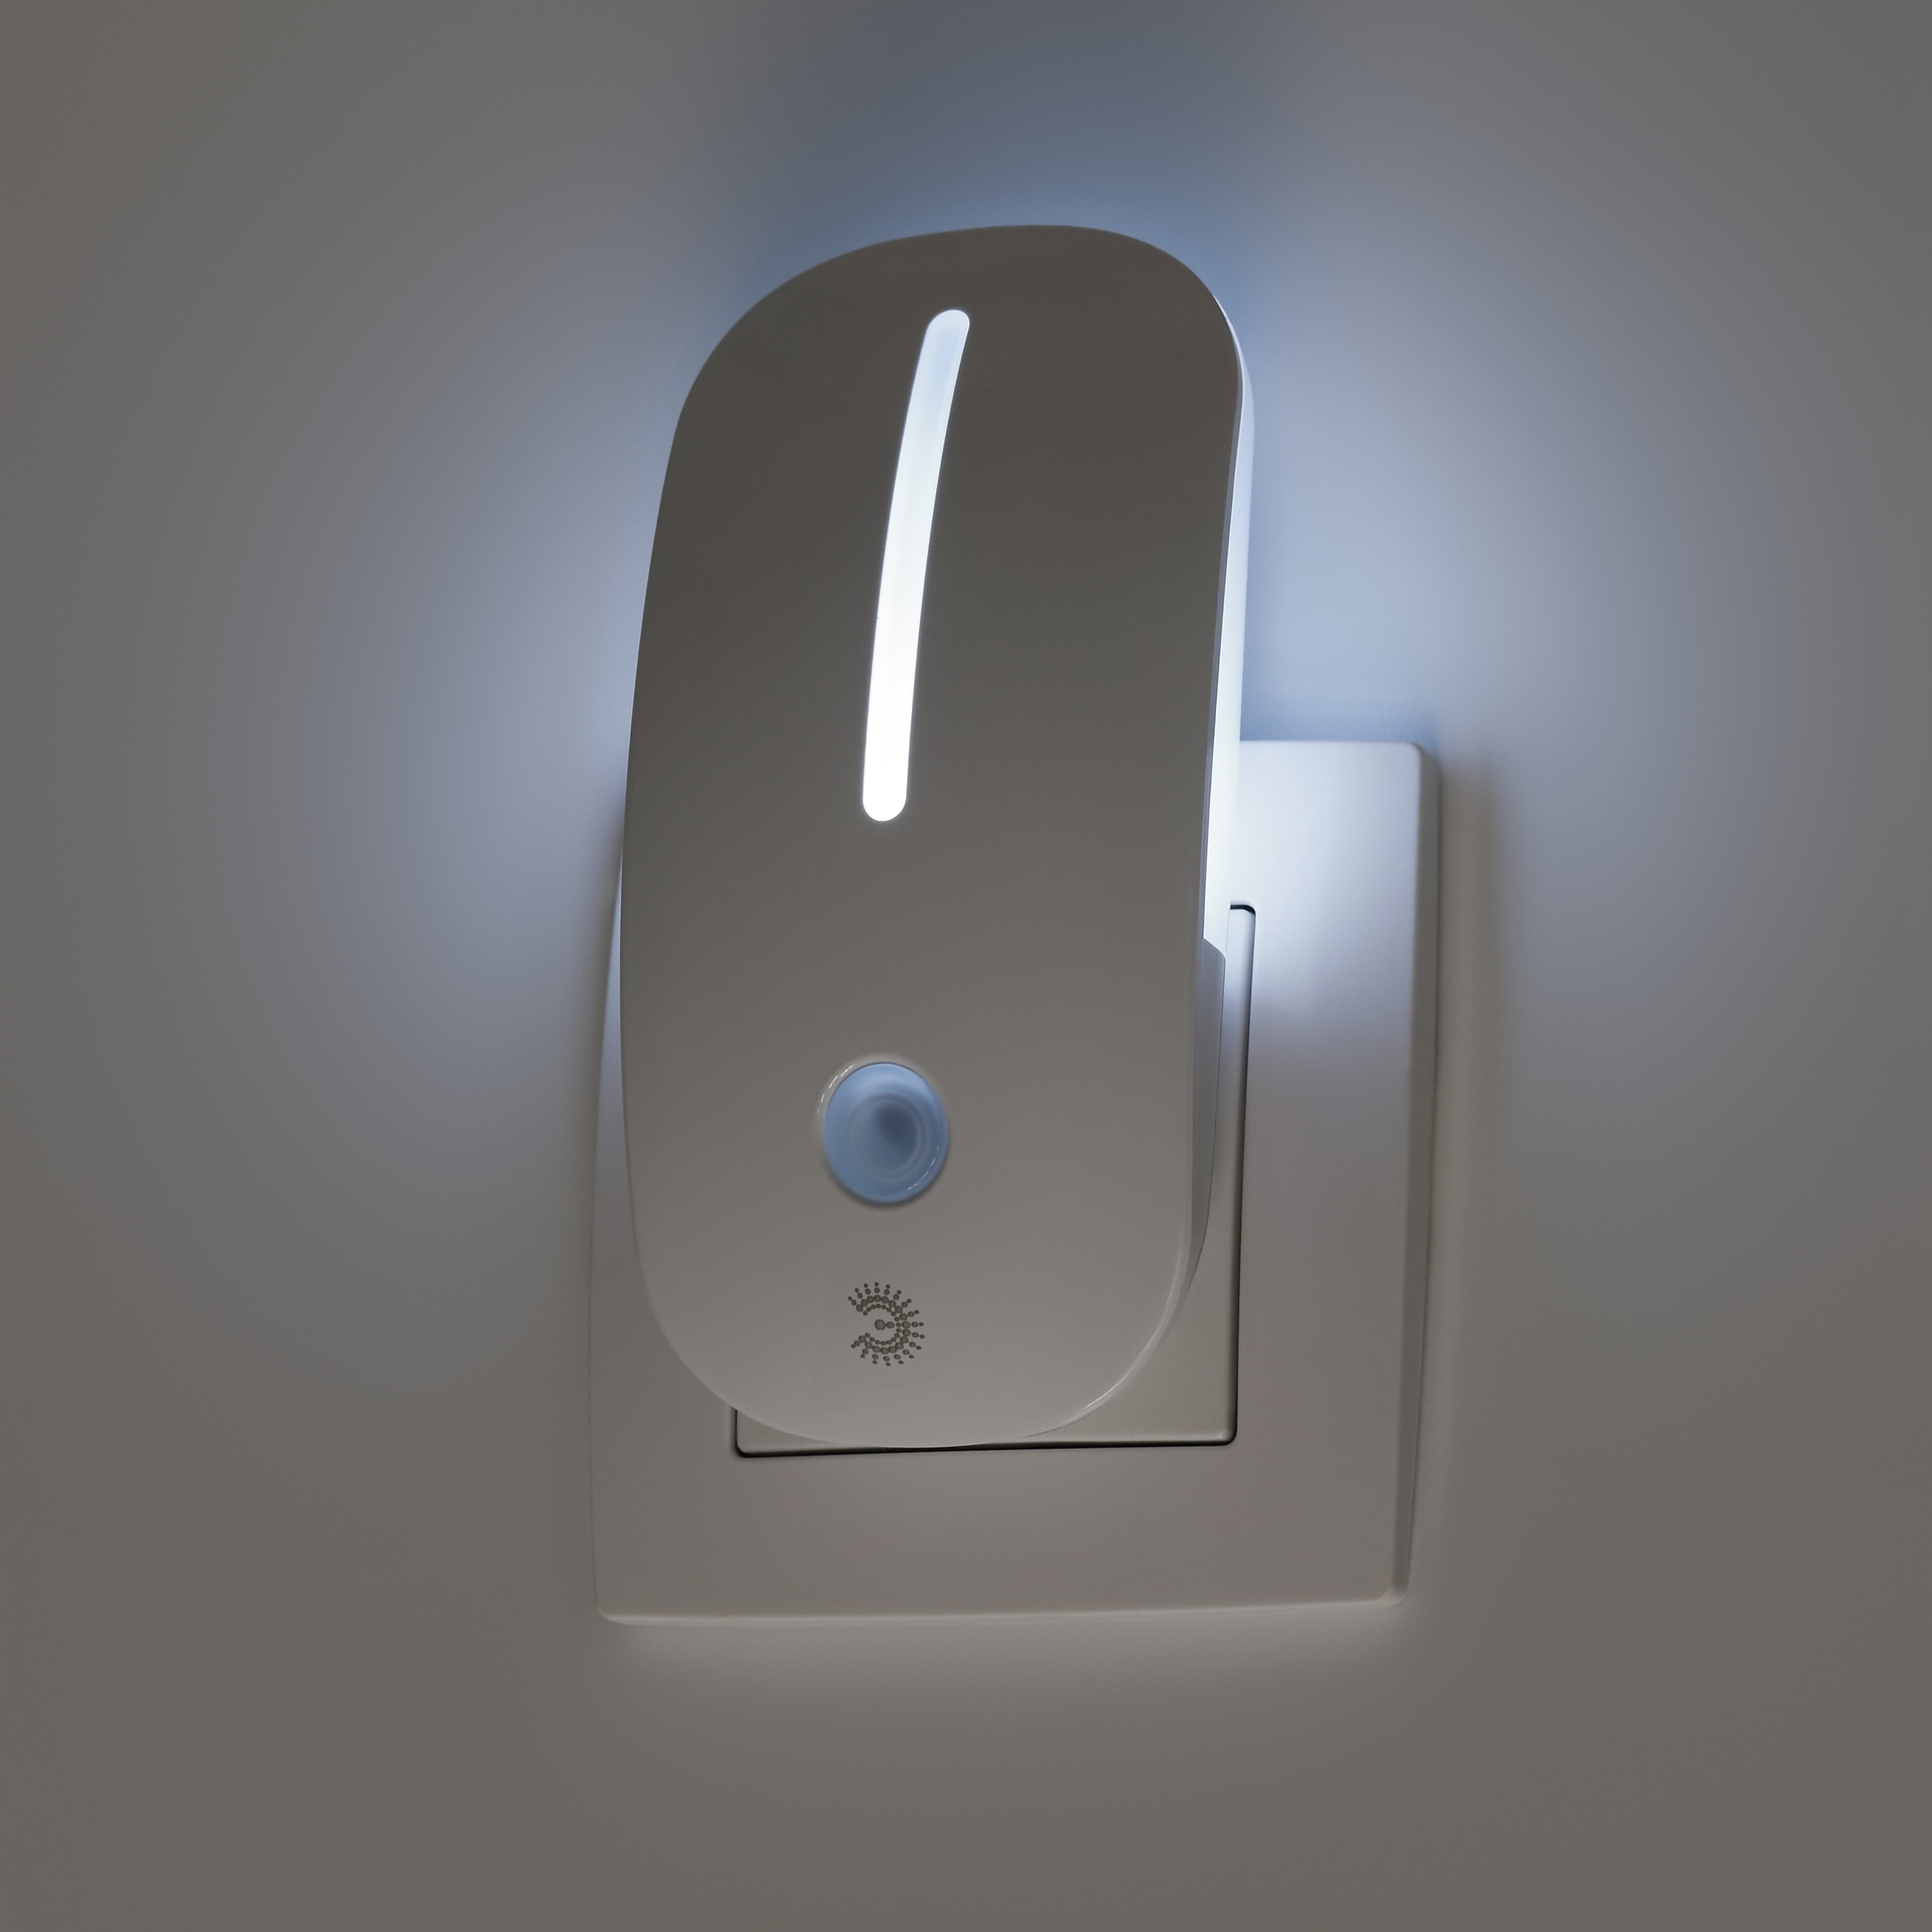 Ночник - светильник светодиодный ЭРА NN-620-LS-W в розетку с датчиком освещенности белый